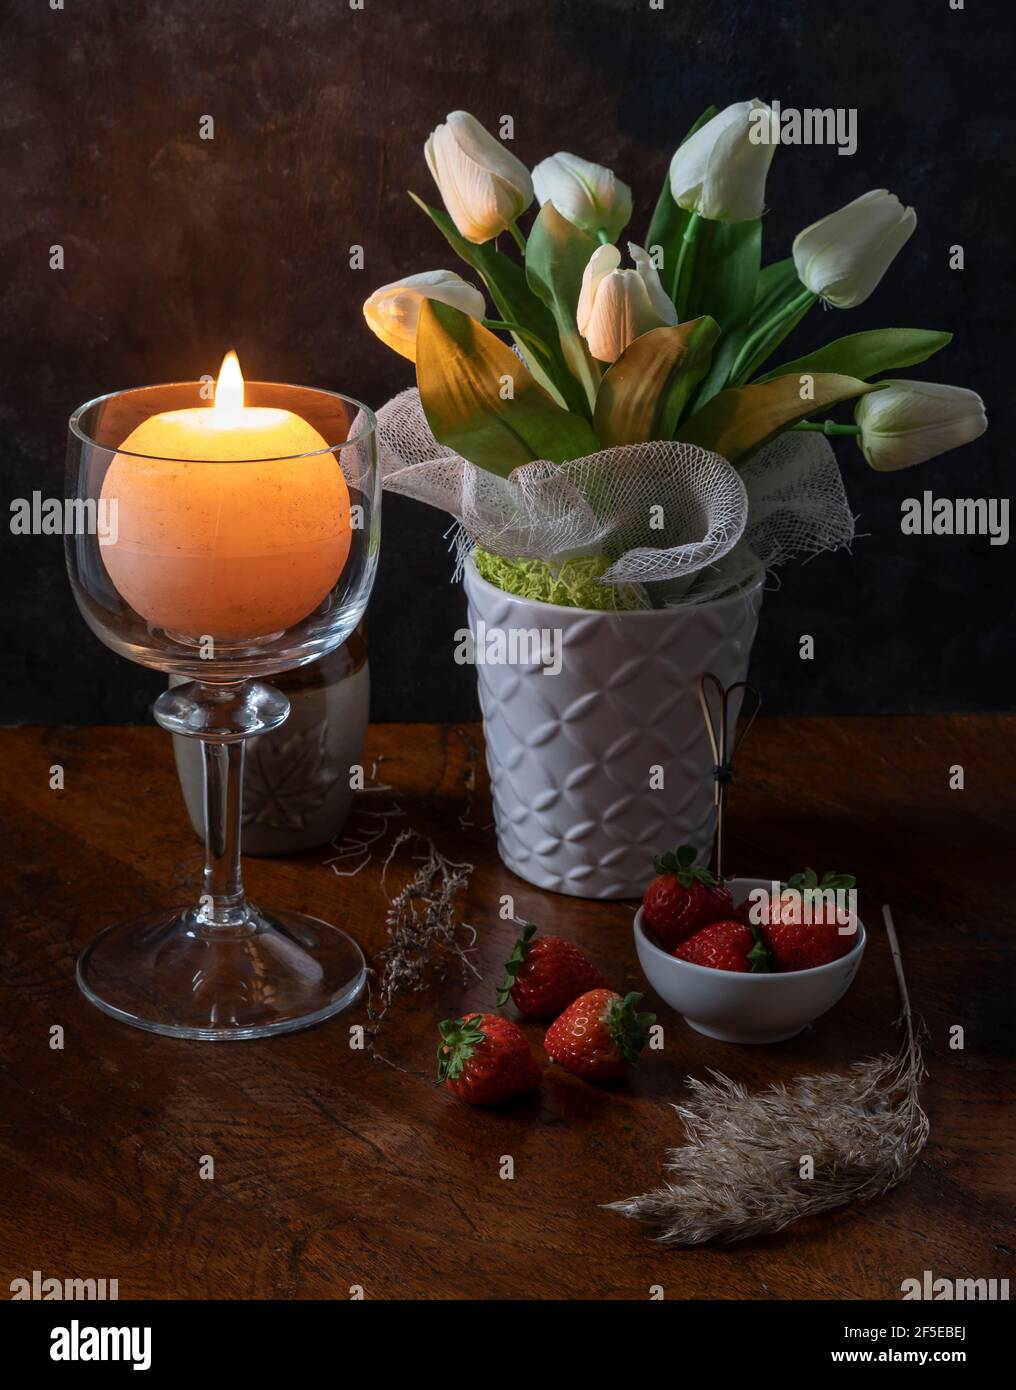 Una candela rotonda è accesa in un portacandele di vetro vicino a un vaso di fiori bianchi su un tavolo di legno con alcune fragole e piante secche Foto Stock